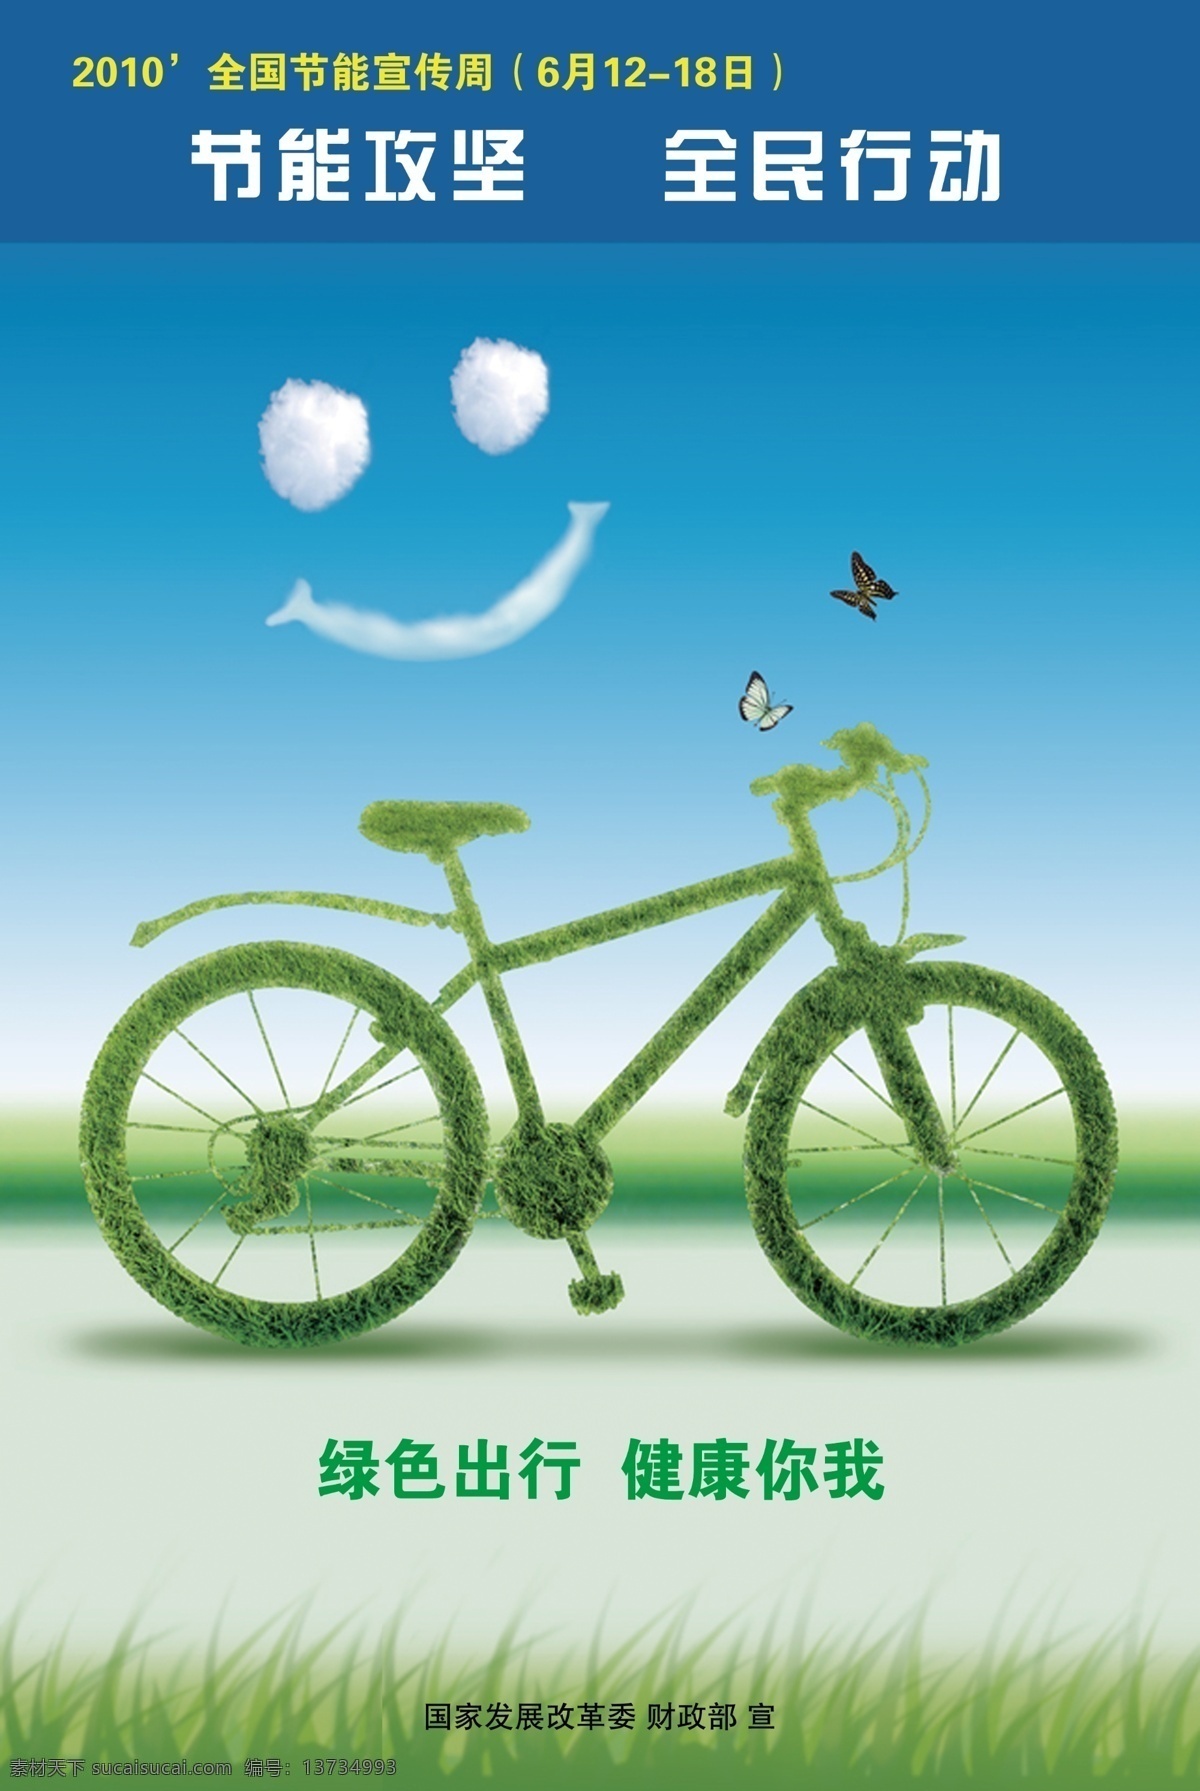 节能宣传 自行车 节能 宣传海报 蓝天 白云 绿草地